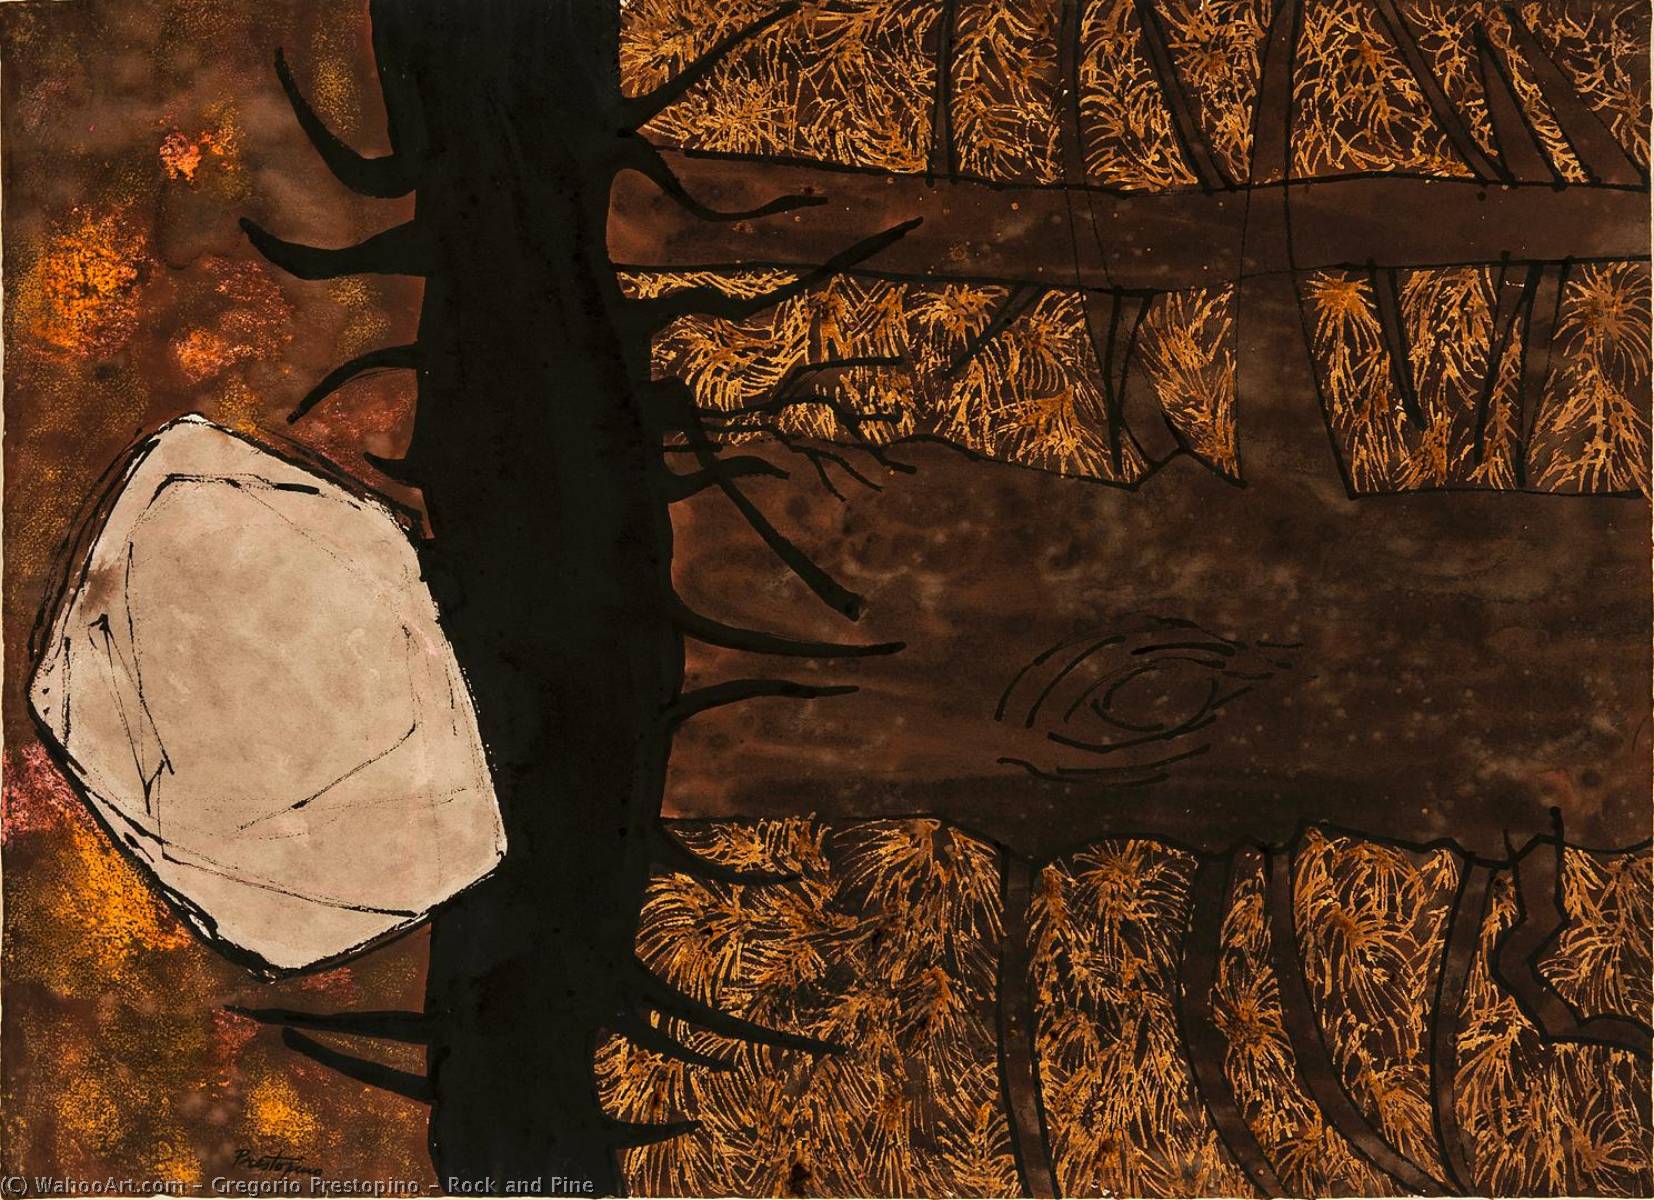 Wikioo.org - Bách khoa toàn thư về mỹ thuật - Vẽ tranh, Tác phẩm nghệ thuật Gregorio Prestopino - Rock and Pine